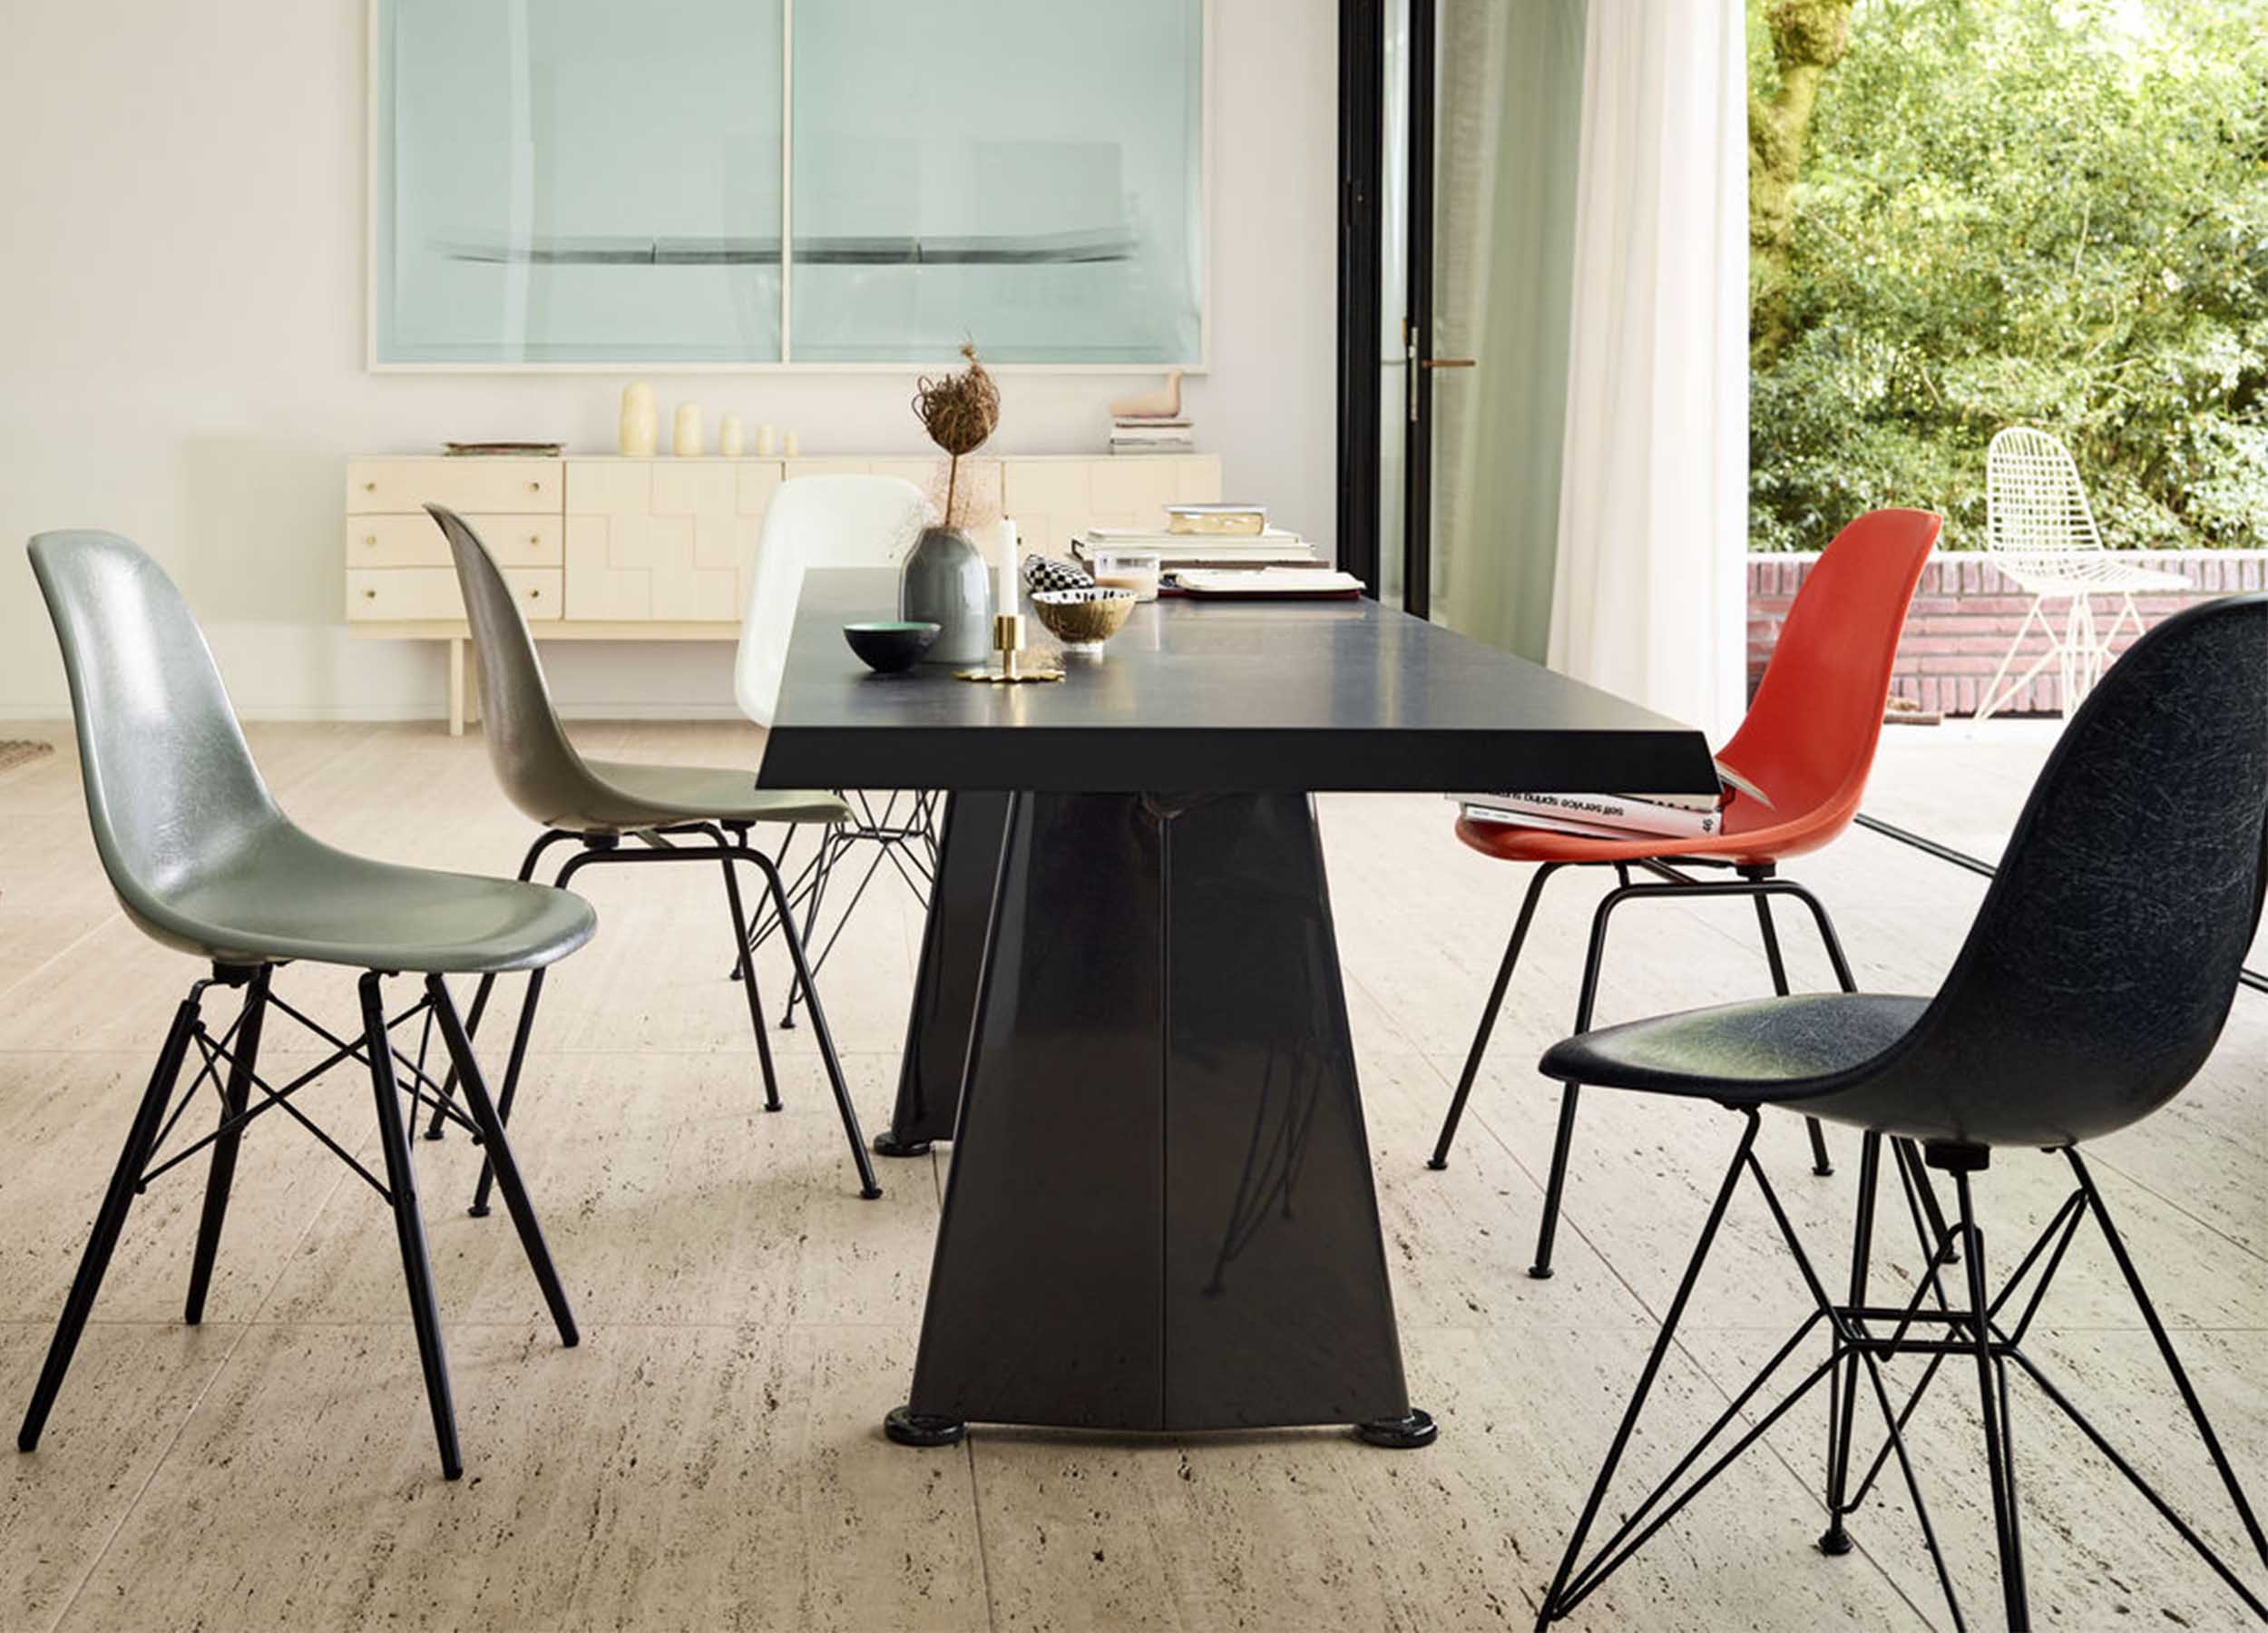 bijwoord Rusteloos herten Vitra Eames Chair: zo kies je jouw kuipstoel – HelloChair